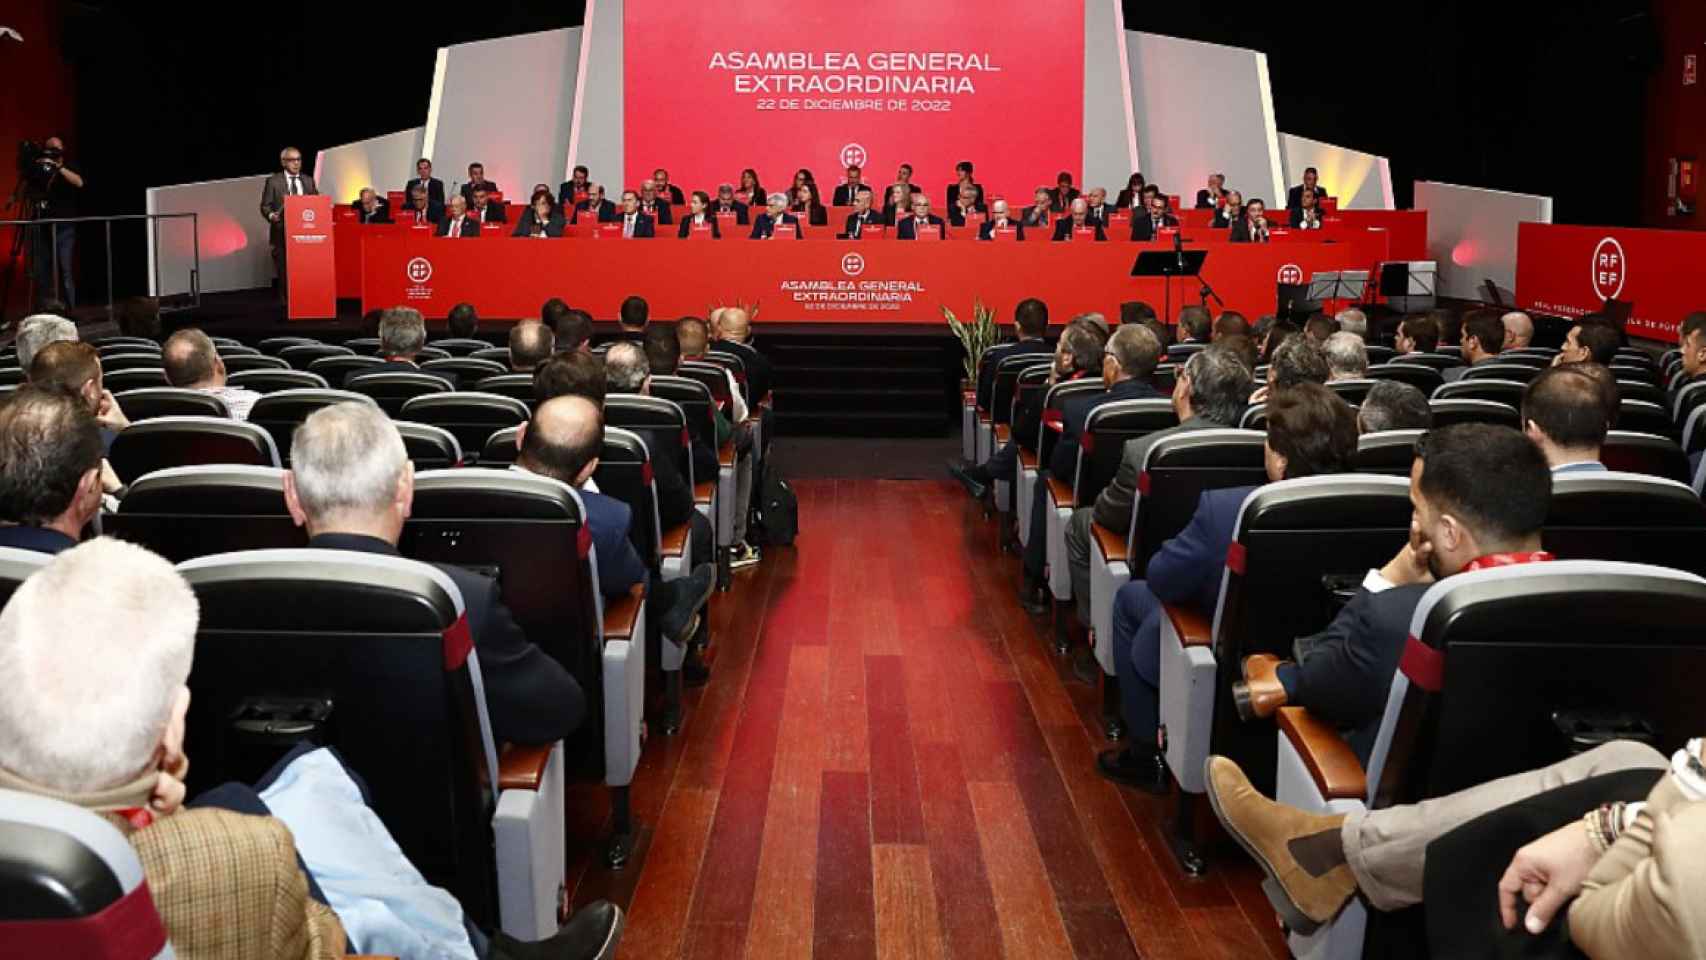 La Asamblea General de la RFEF en diciembre de 2022